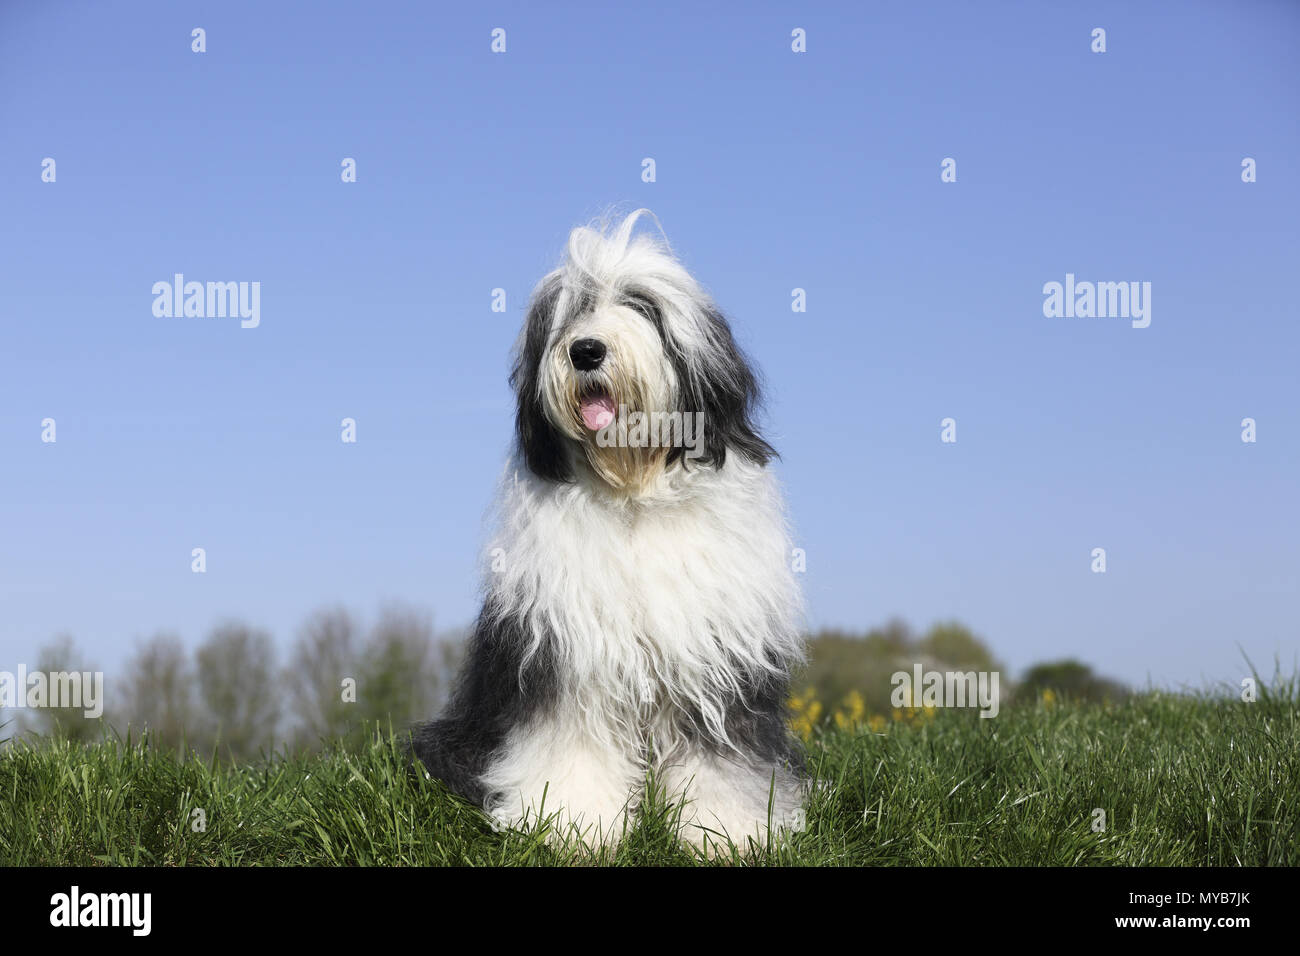 Old English Sheepdog. Elle adultes-chien assis sur une prairie. Allemagne Banque D'Images